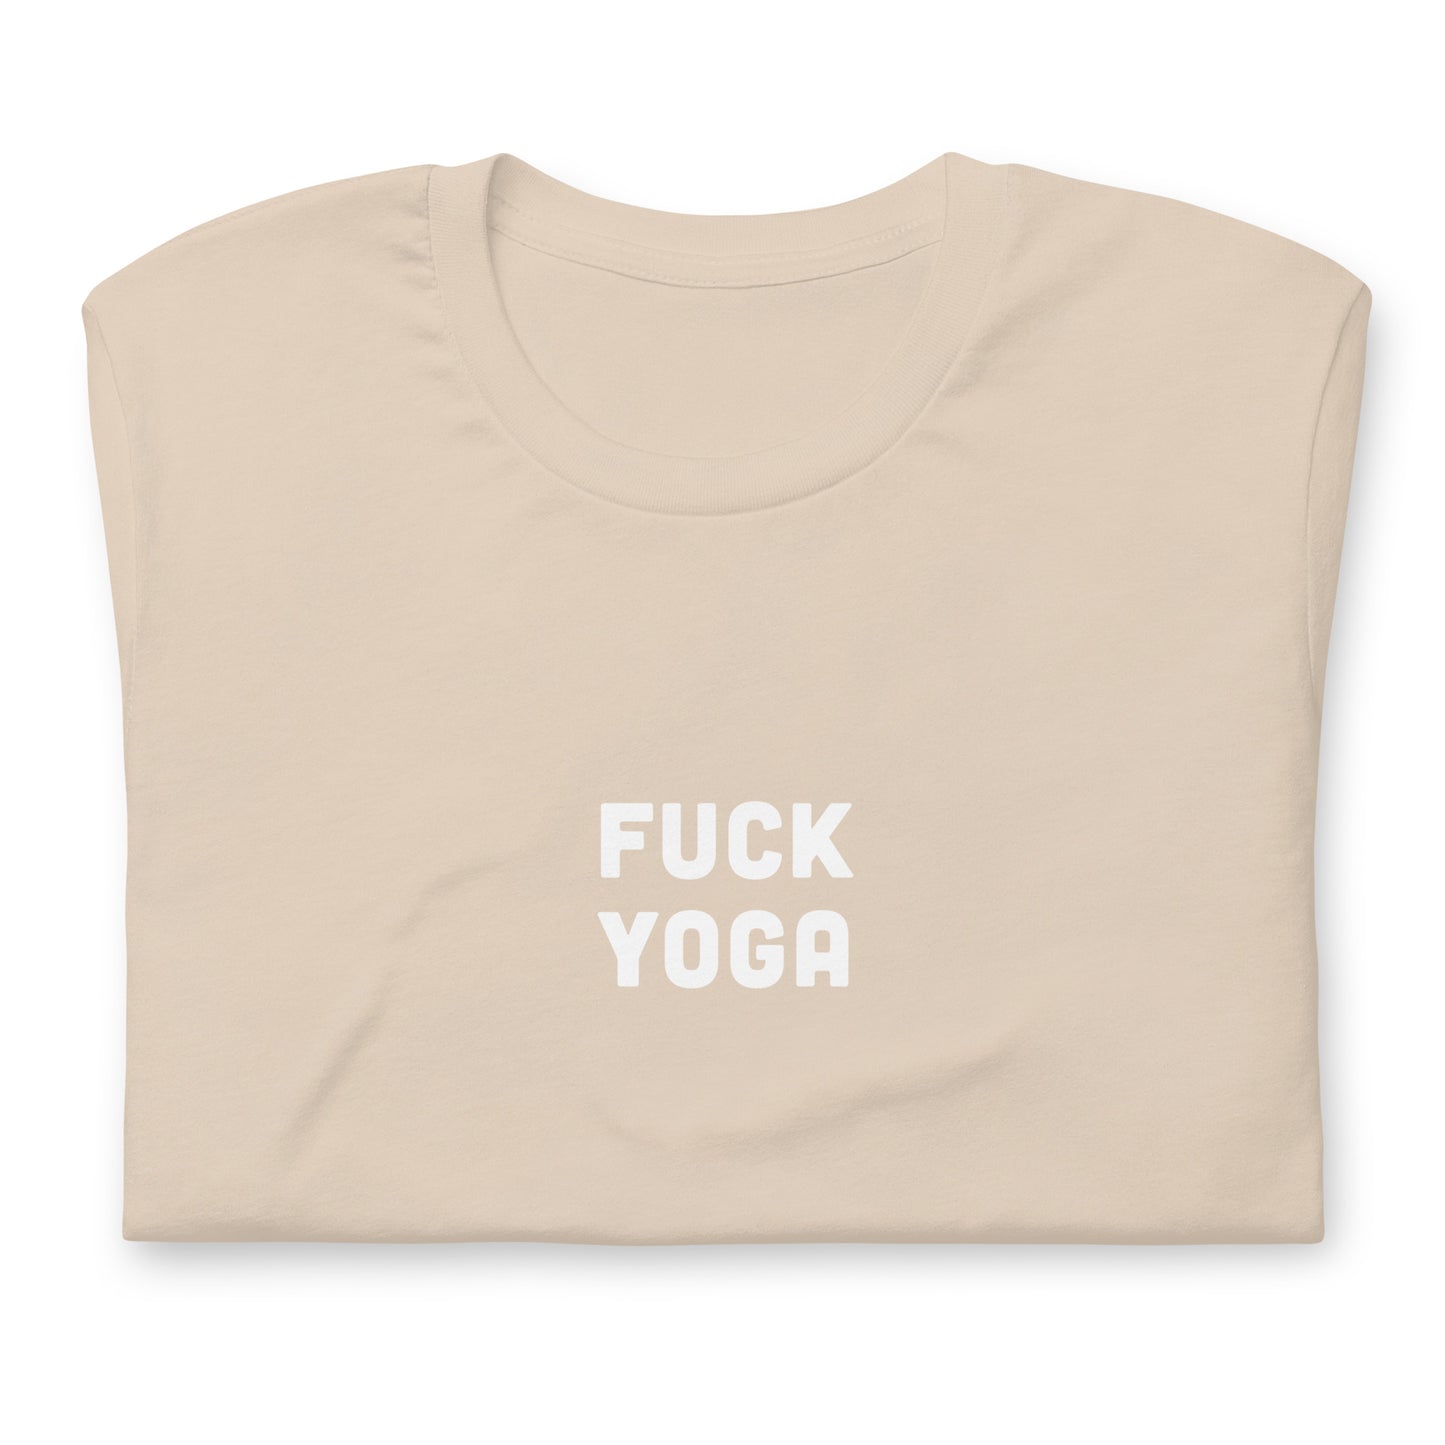 Fuck Yoga T-Shirt Size L Color Asphalt